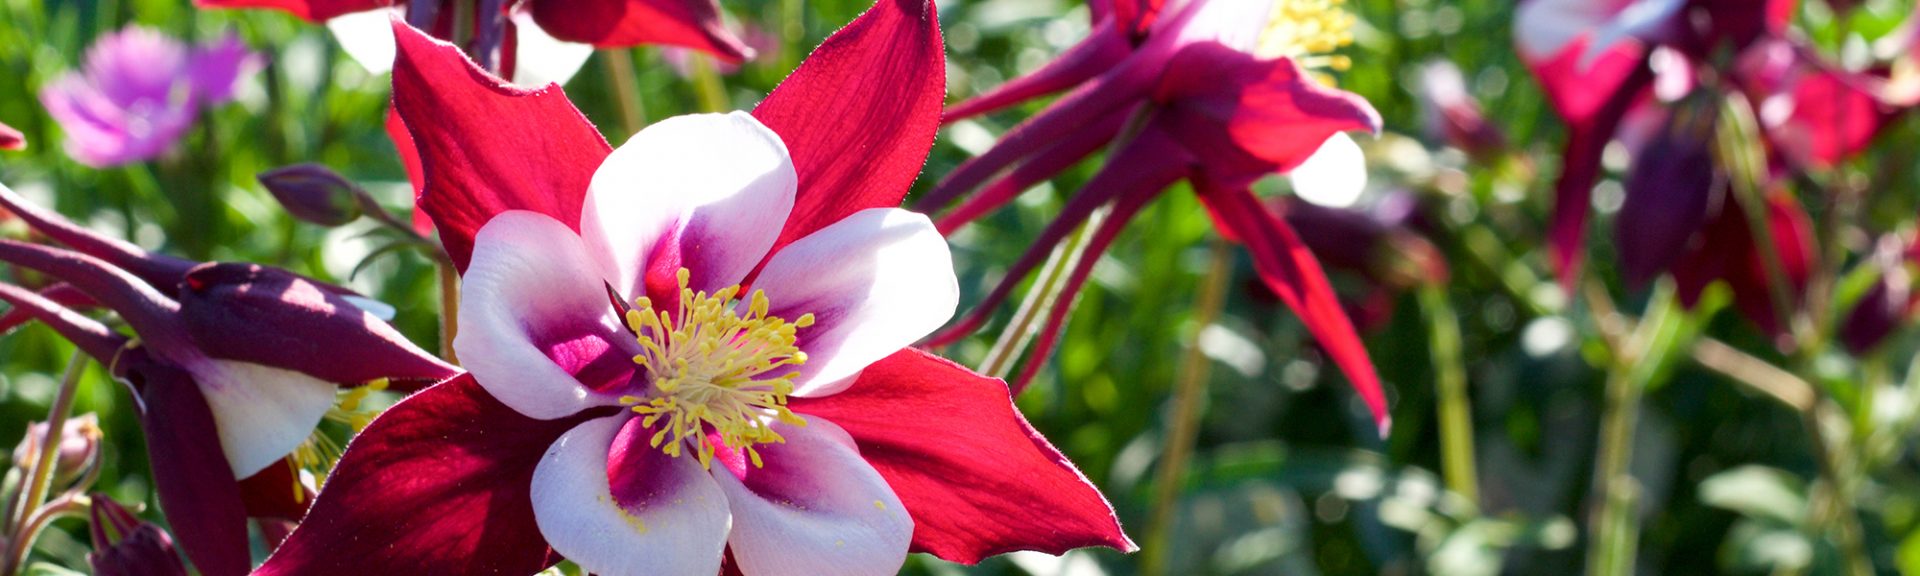 Vue rapprochée des fleurs d'ancolie rouges et blanches en fleurs